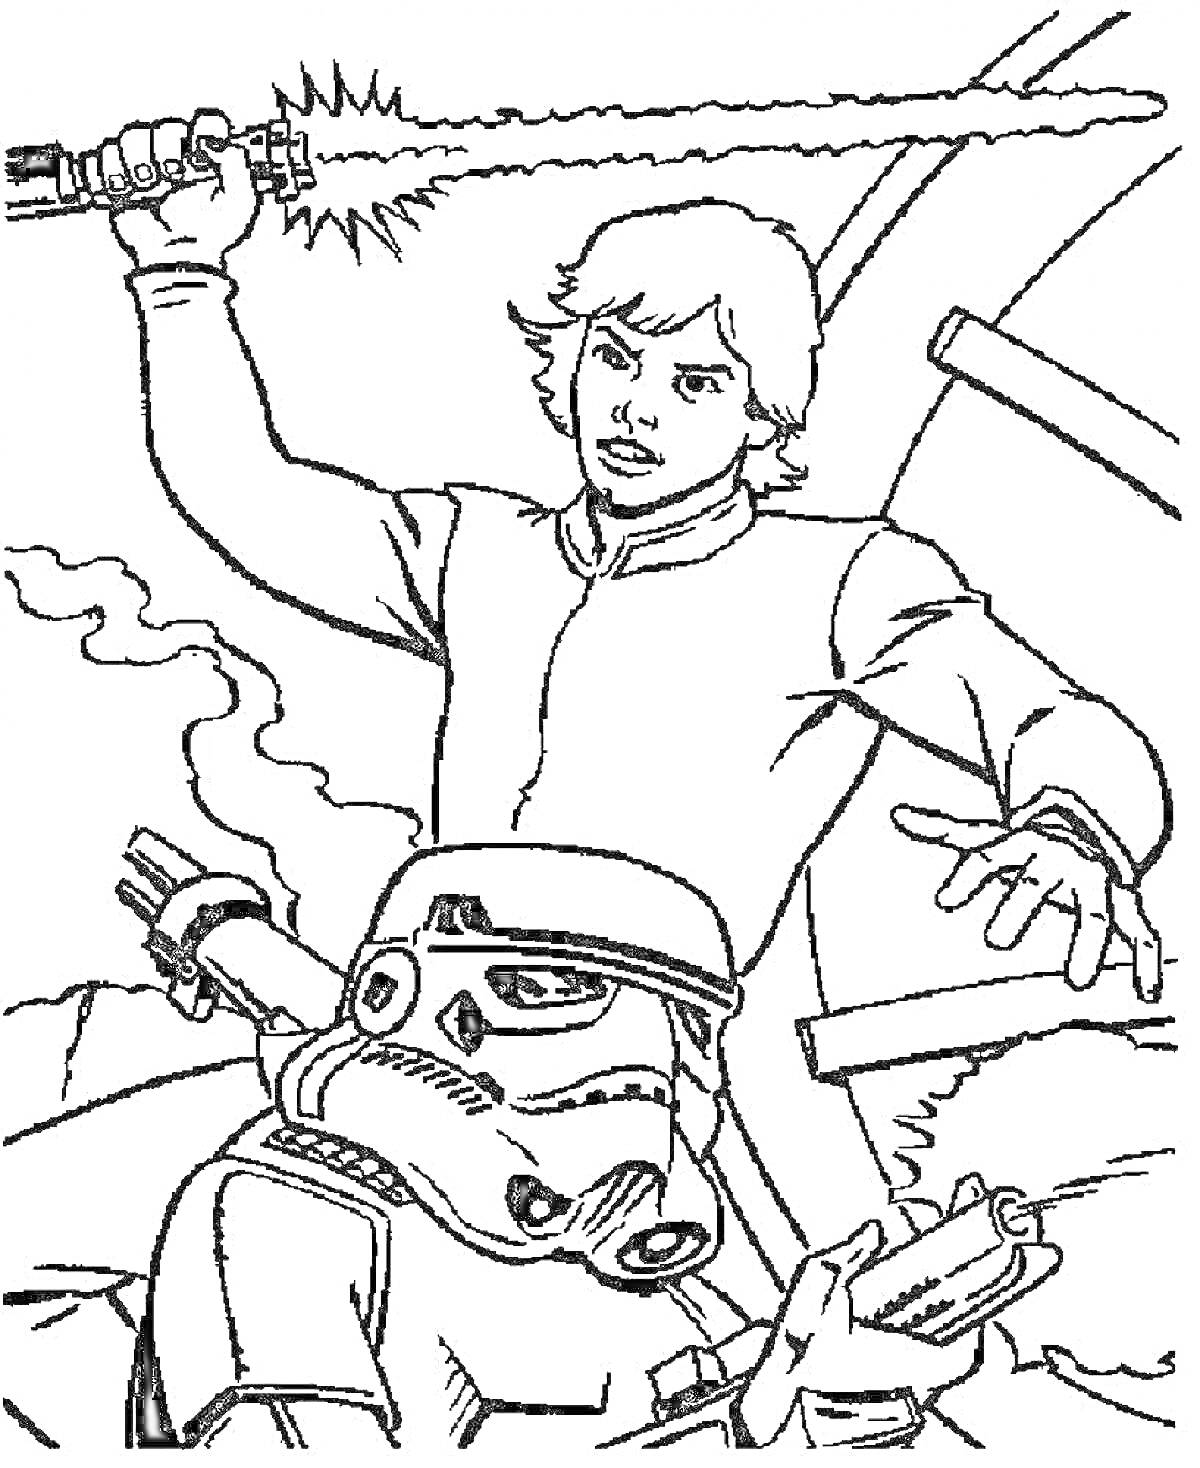 Раскраска Люк Скайуокер с поднятым световым мечом и штурмовик на фоне окружающей среды.